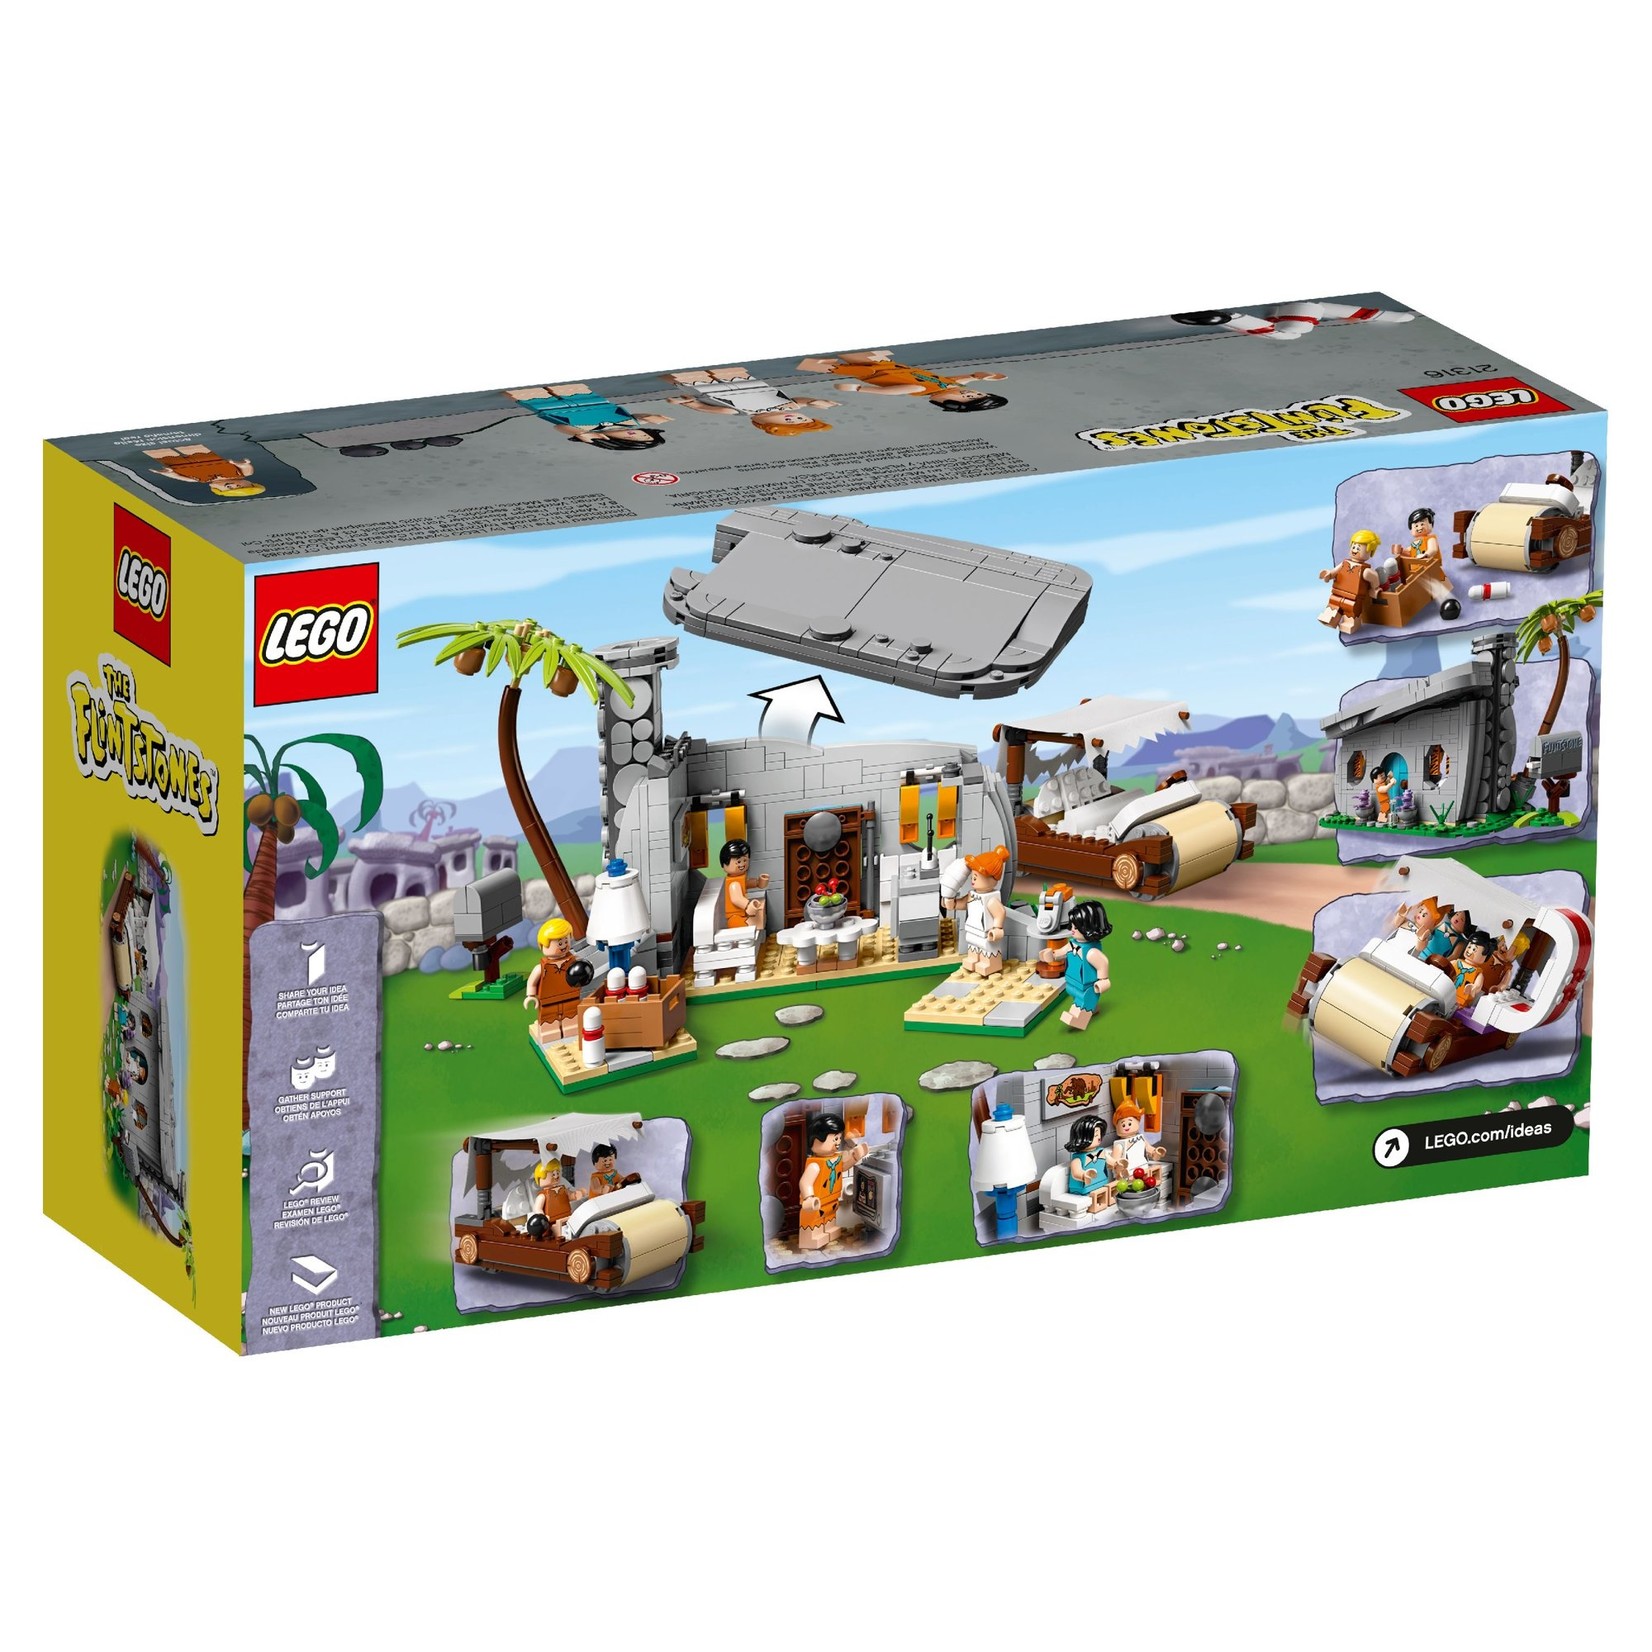 LEGO LEGO The Flintstones 21316